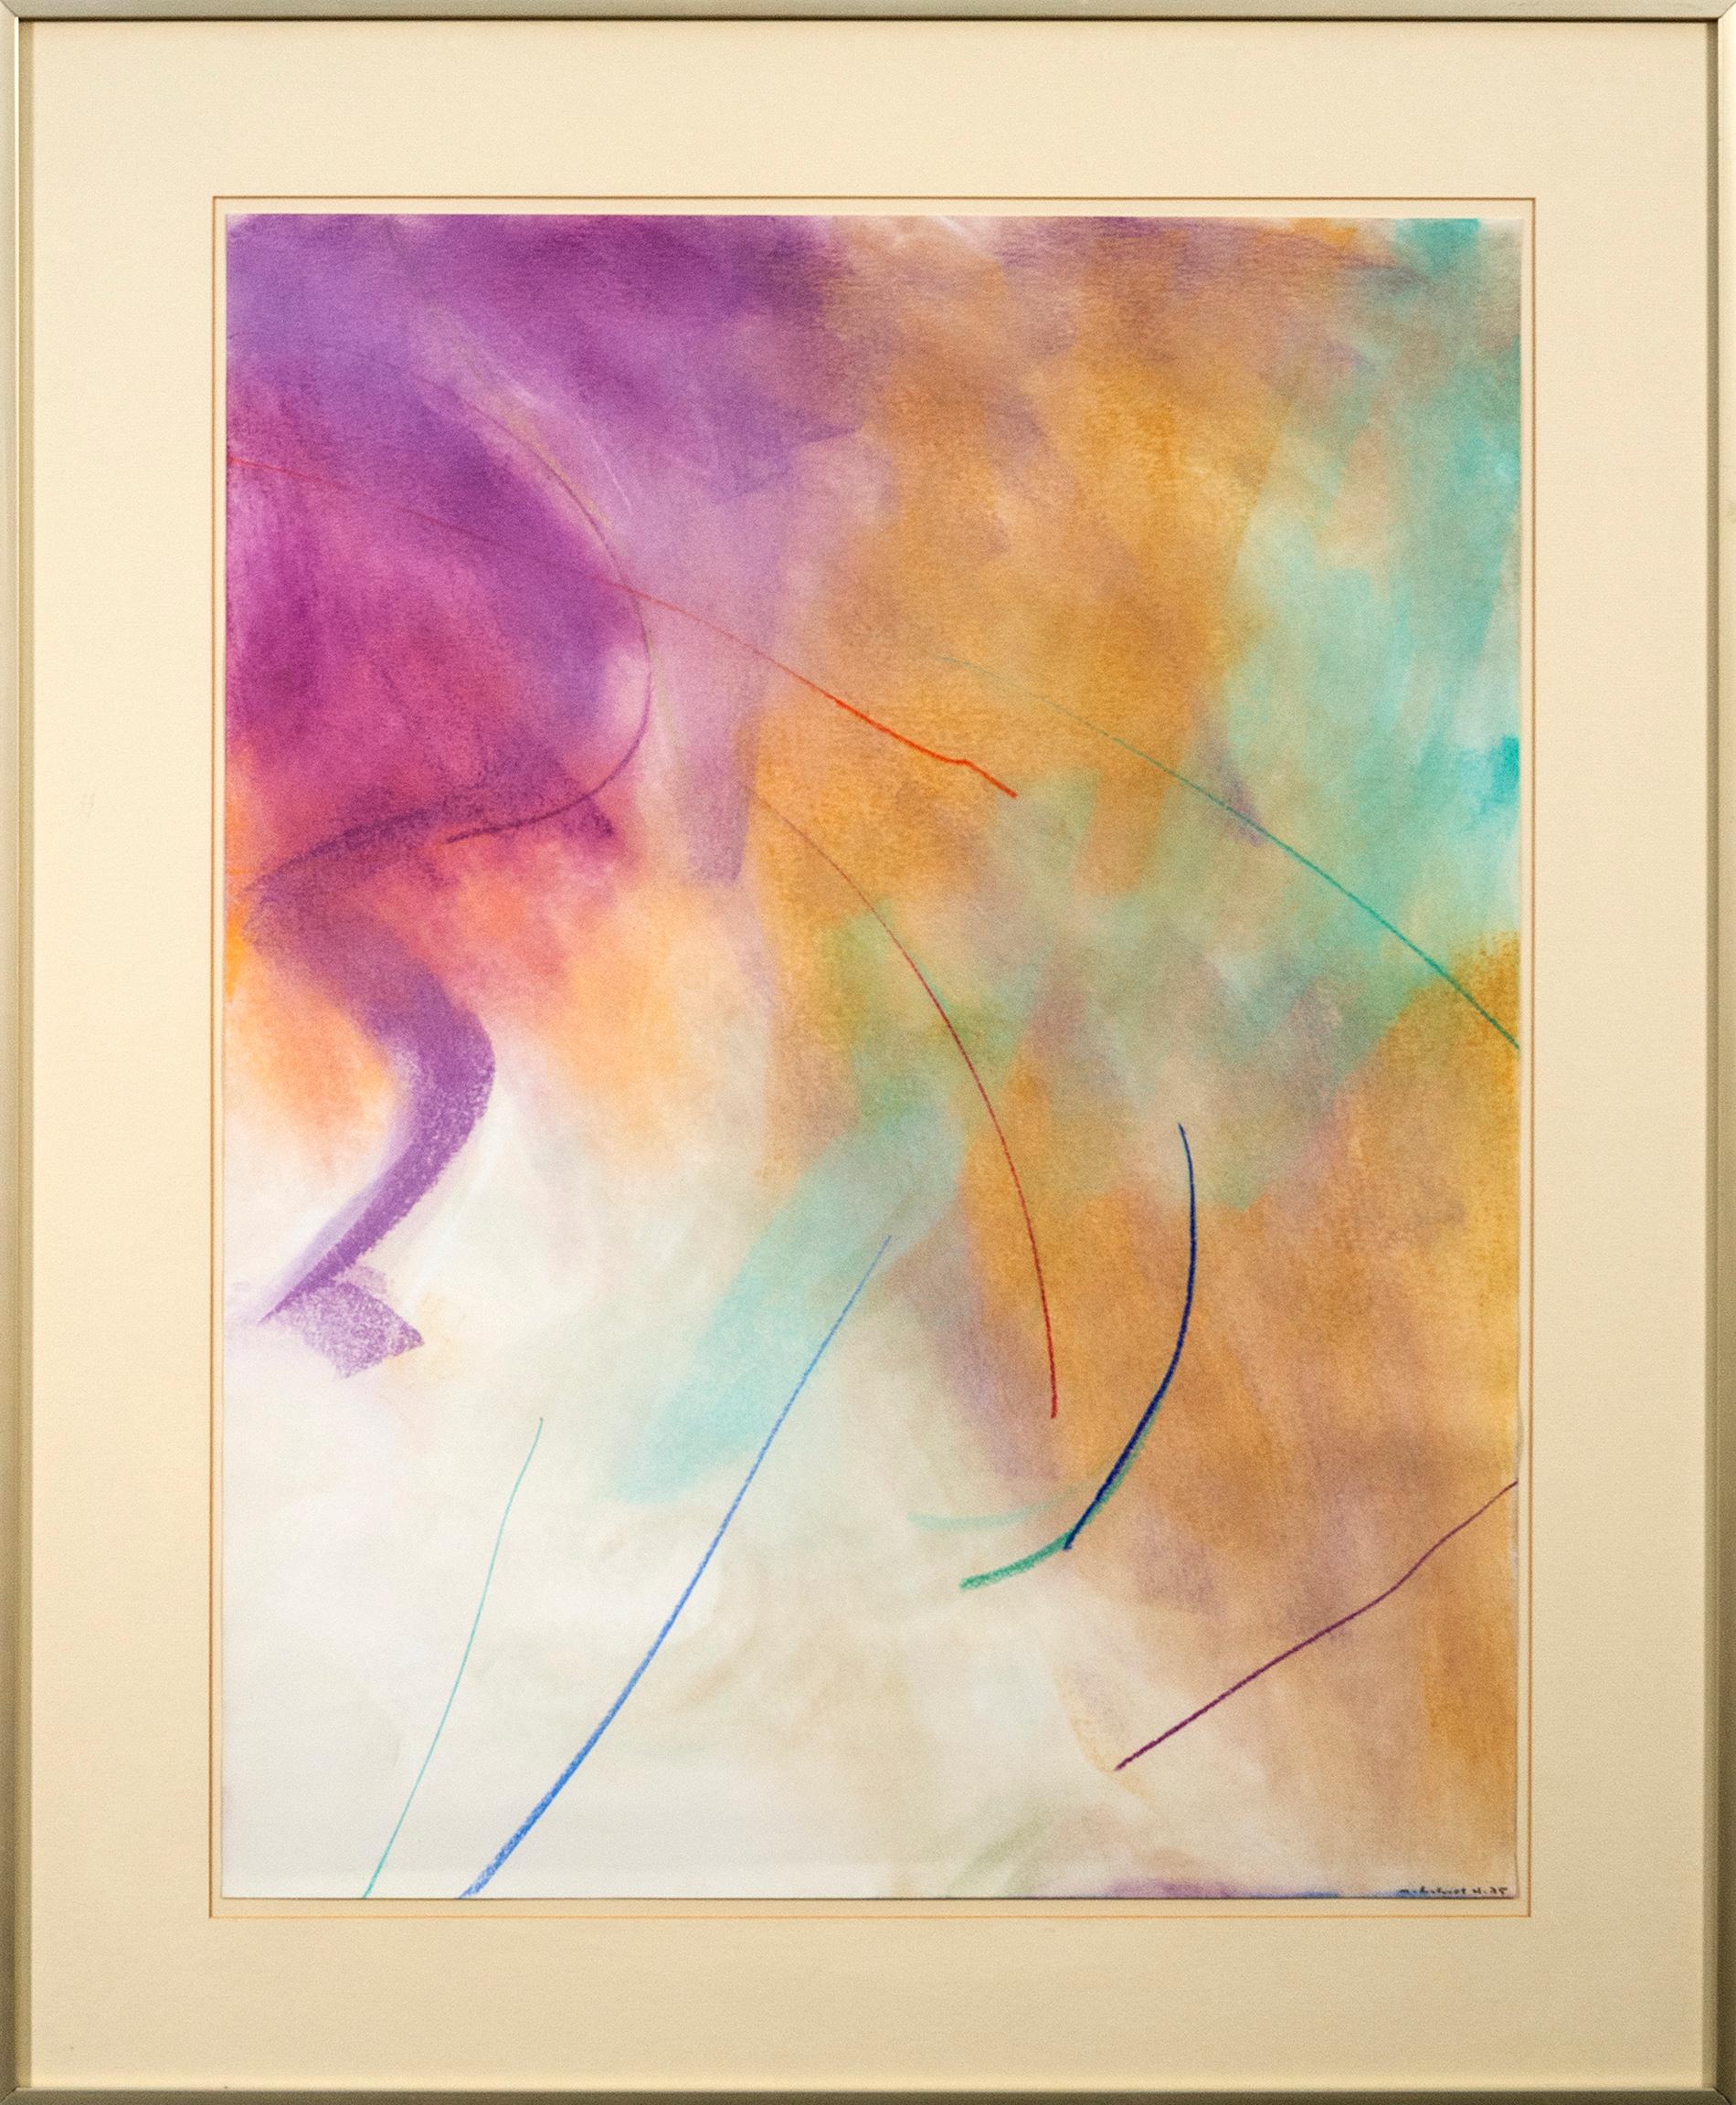 Untitled, Magenta, Siena und Türkis – ausdrucksstark, abstrakt, Pastell auf Papier – Painting von Milly Ristvedt